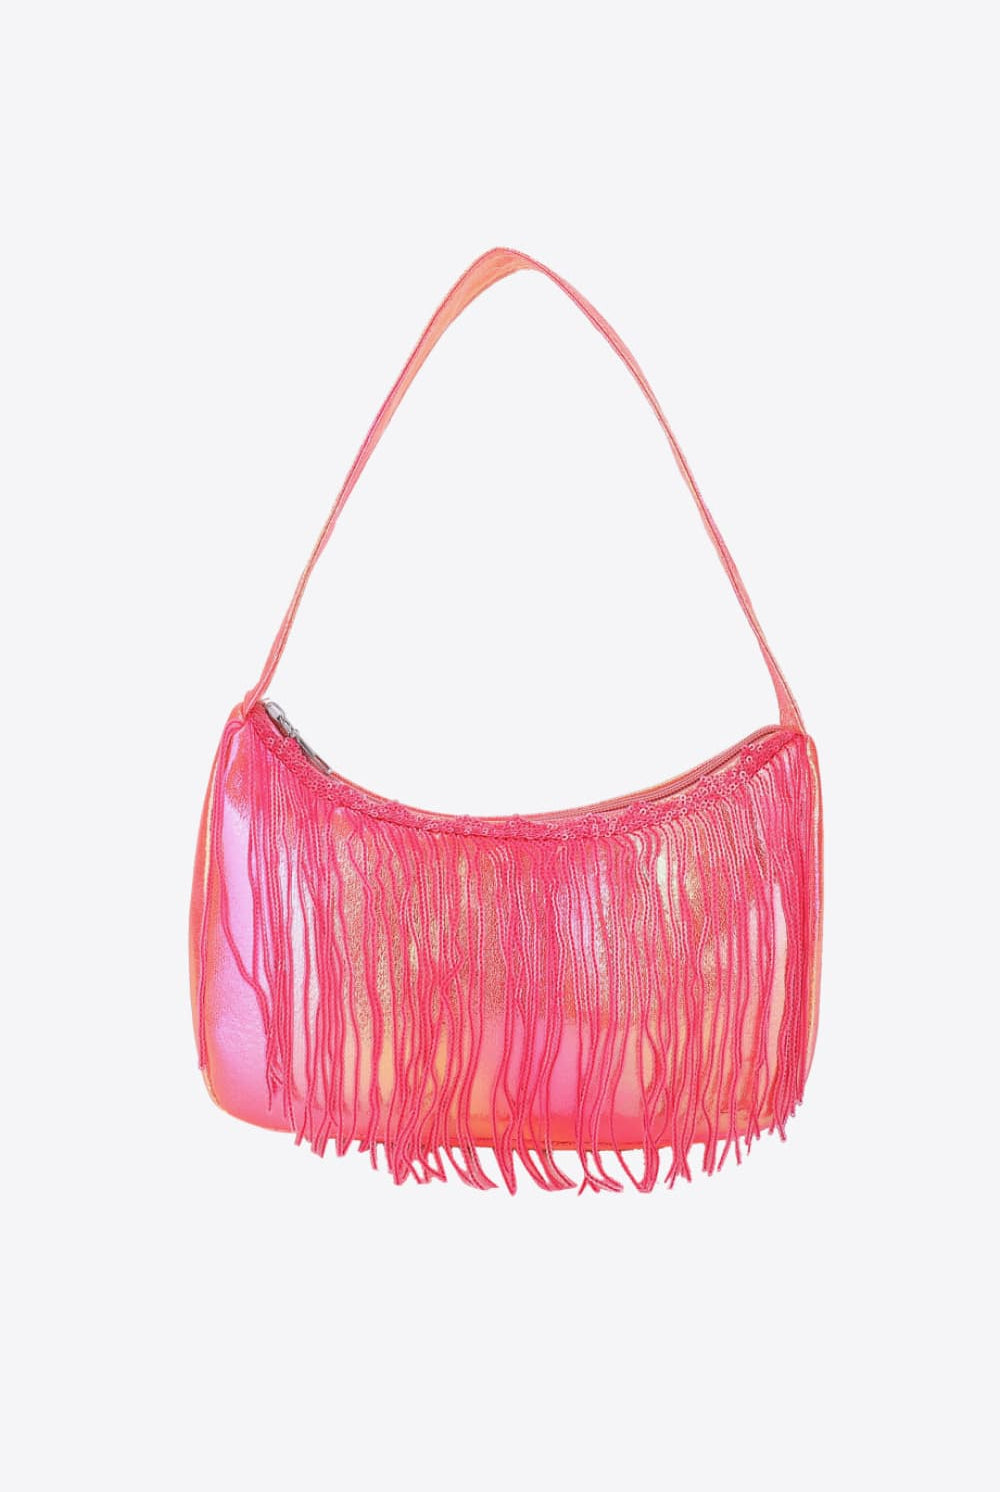 Fringe Detail Handbag - GemThreads Boutique